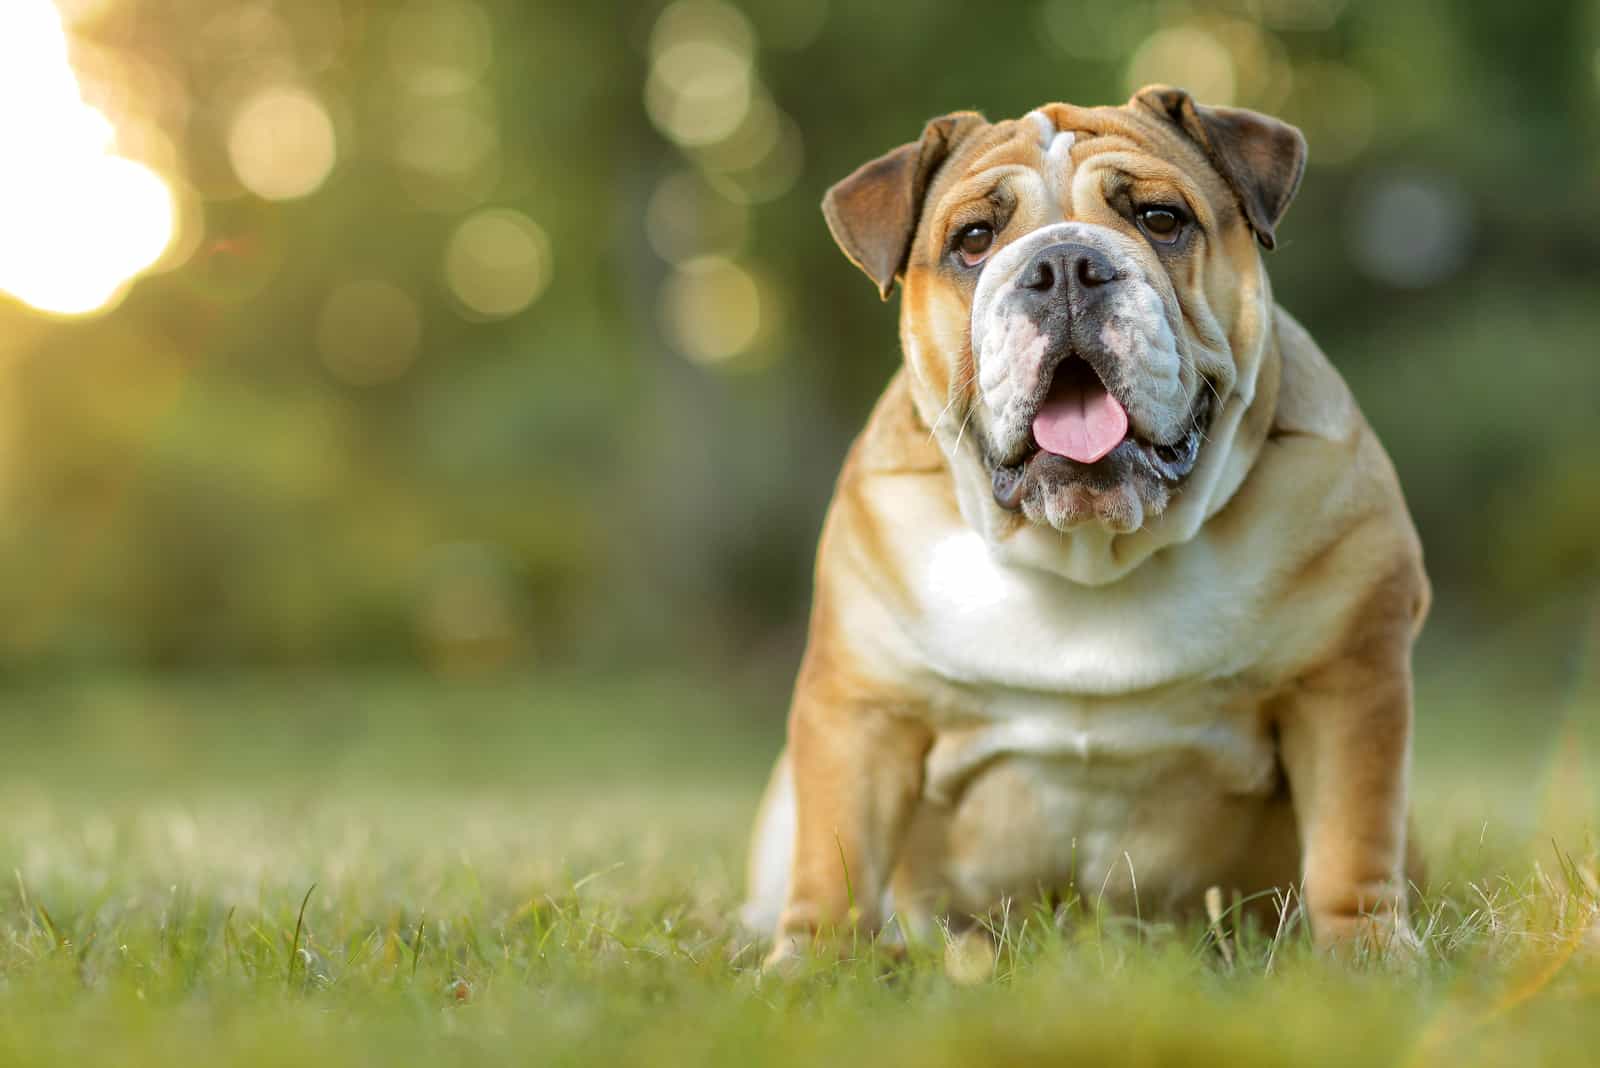 English Bulldog sitting on the grass